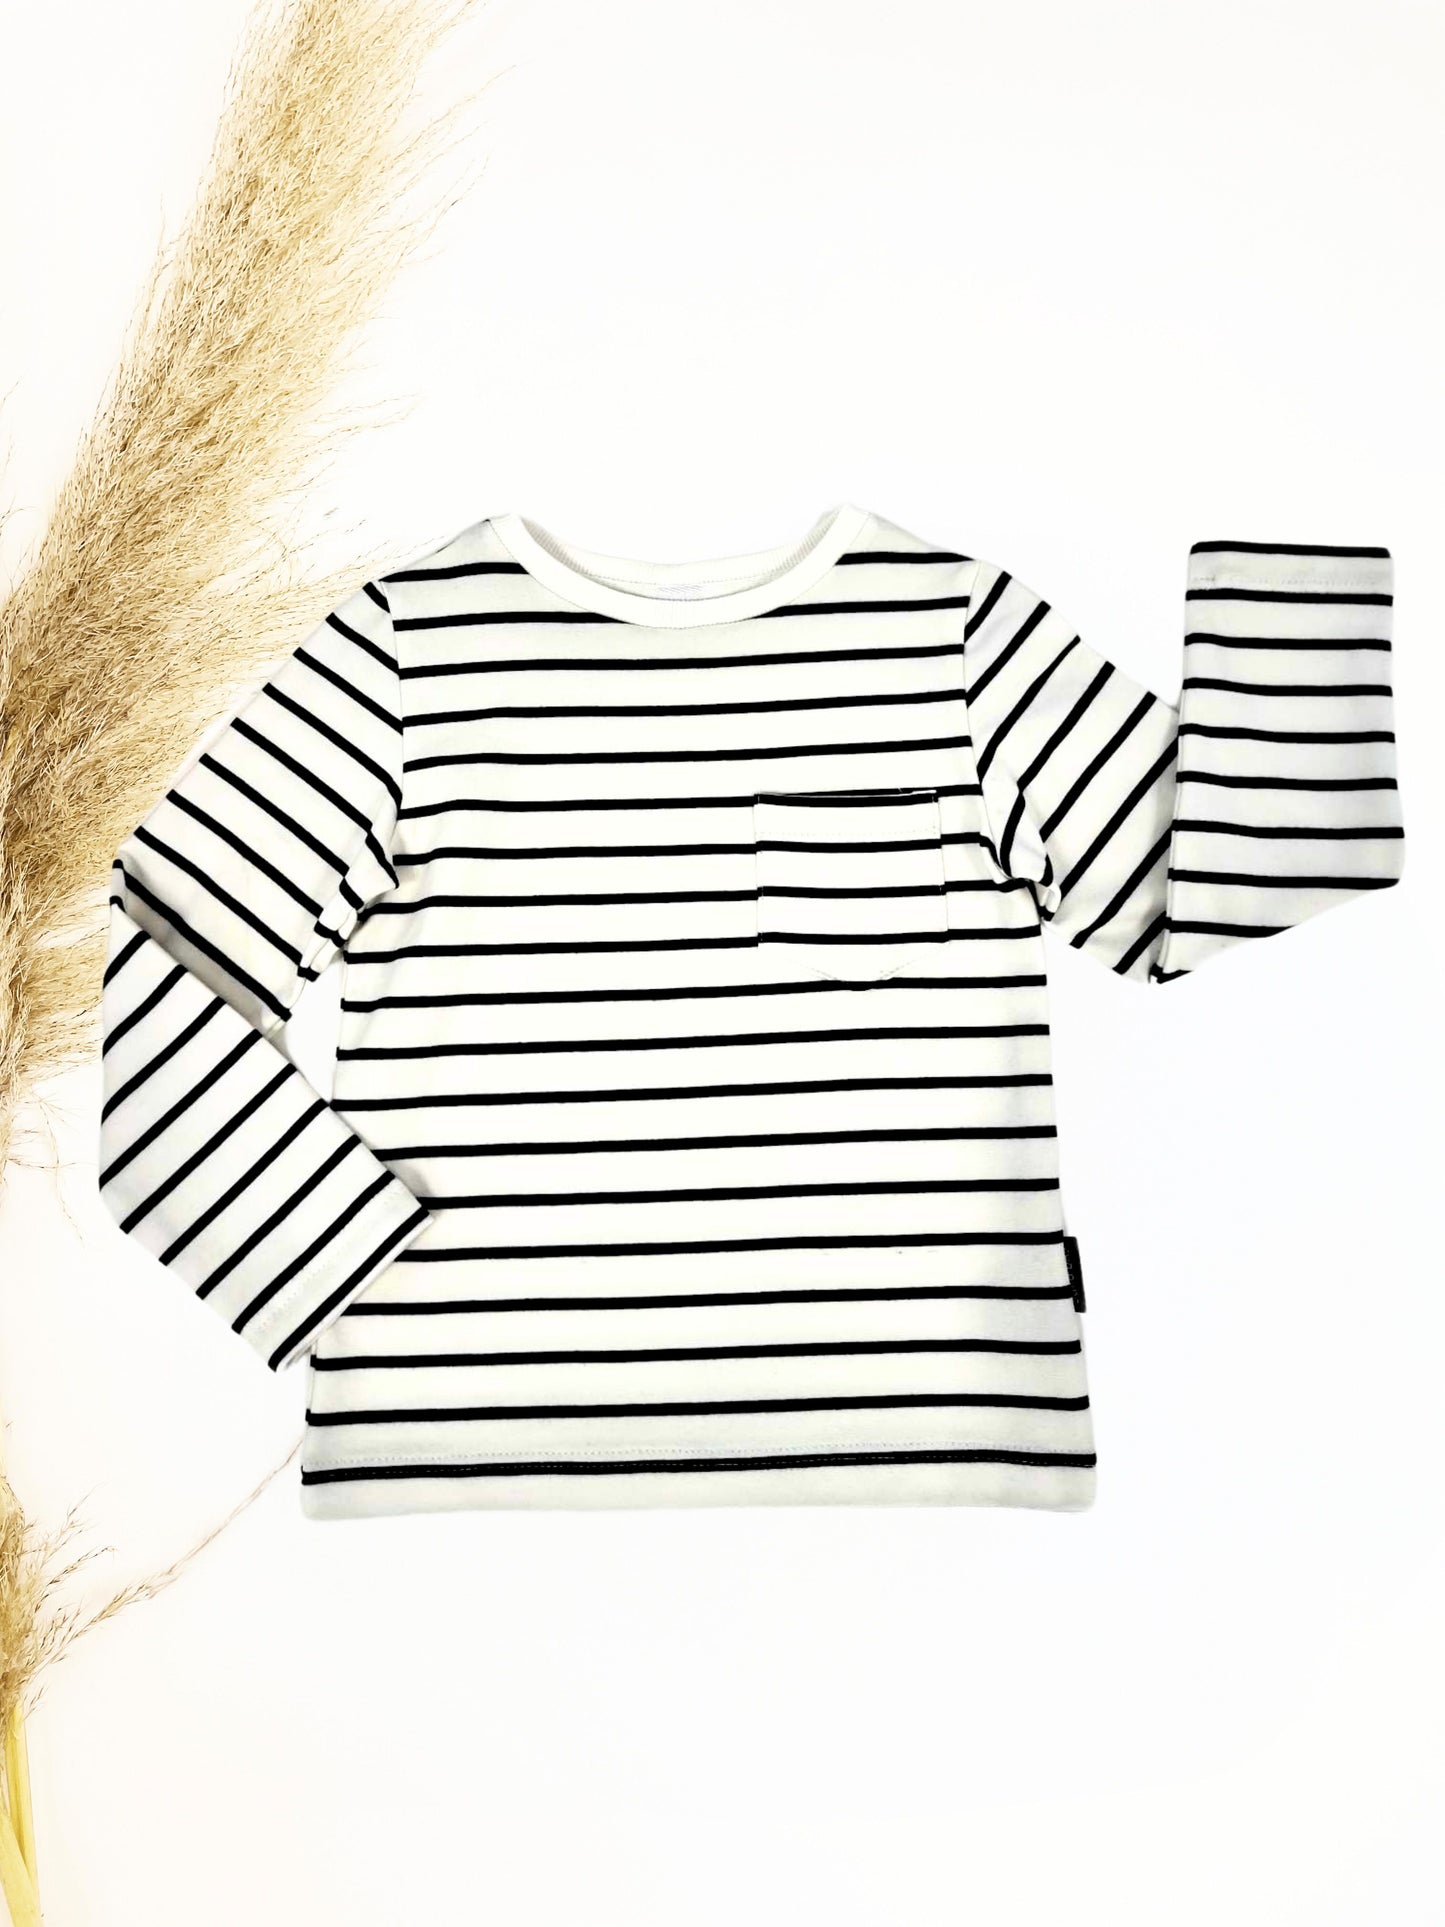 Striped children's blouse "Walnut cream" 98-104